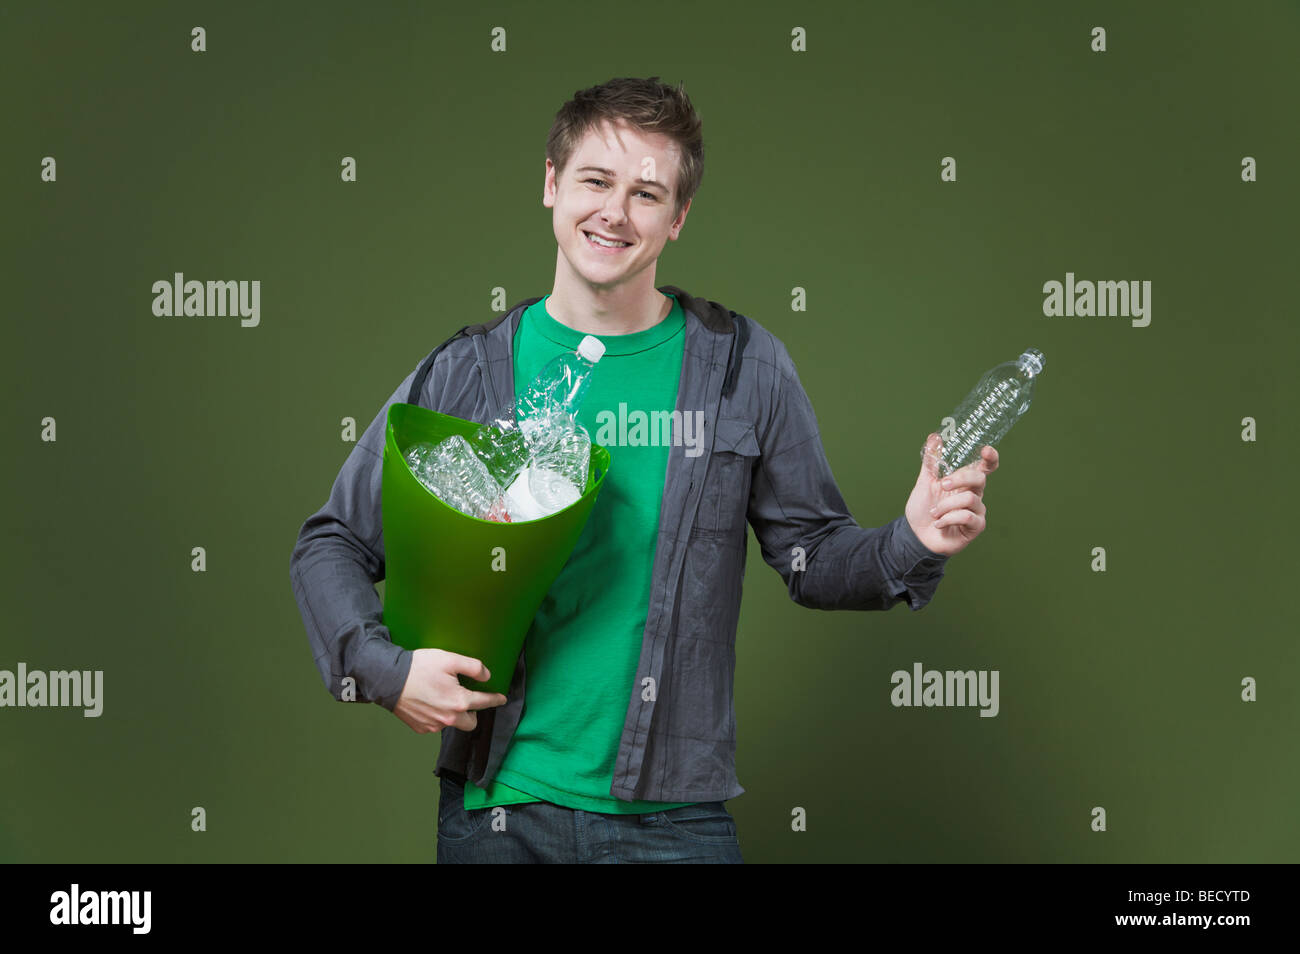 Ritratto di un uomo con un contenitore di riciclaggio e sorridente Foto Stock